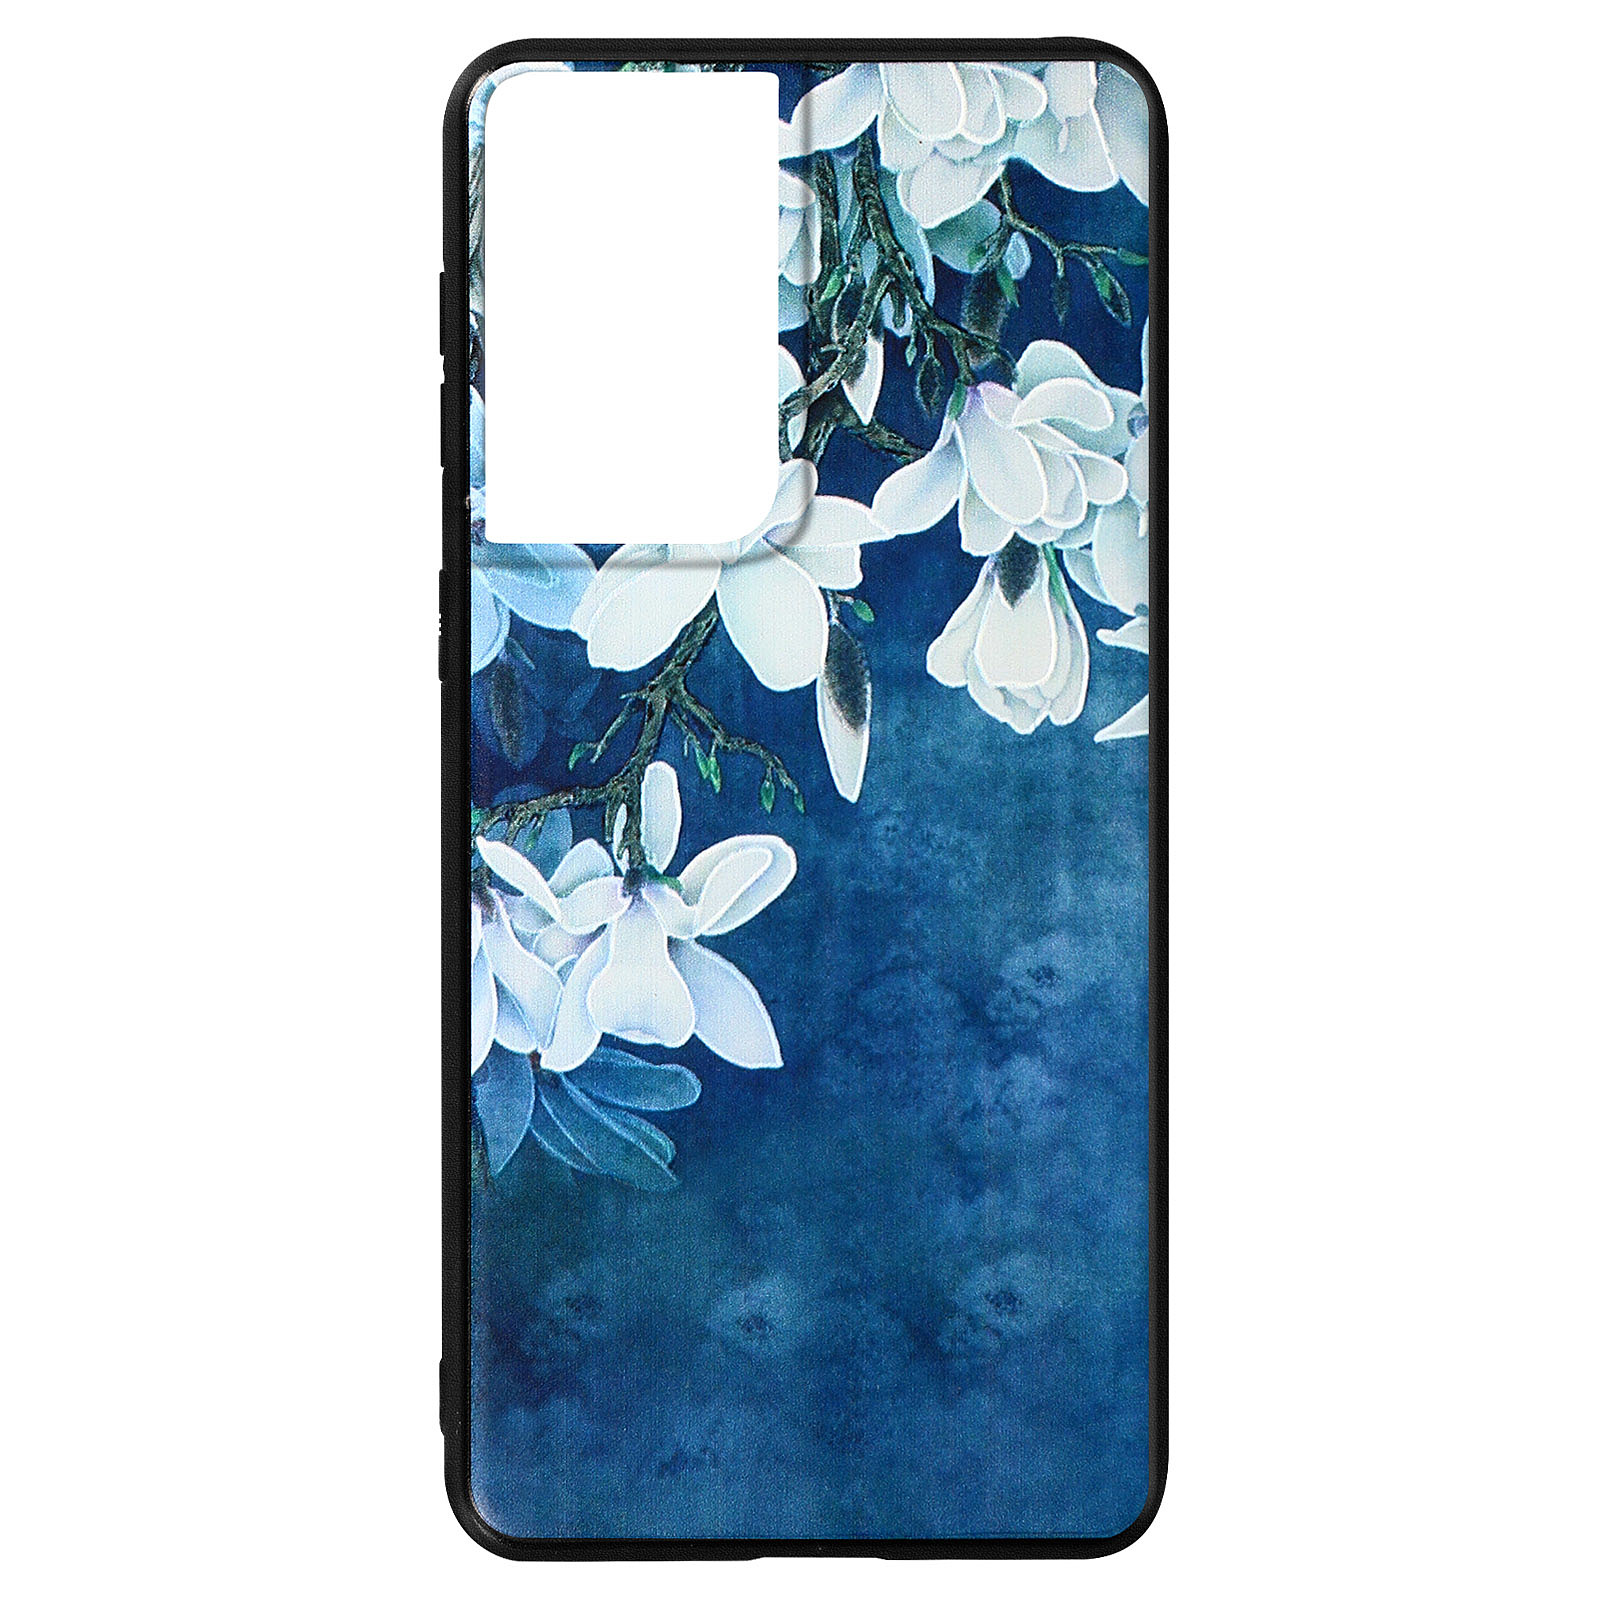 Avizar Coque pour Samsung Galaxy S21 Ultra en Silicone gel Imprime fleurs Bleu et Blanc - Coque telephone Avizar